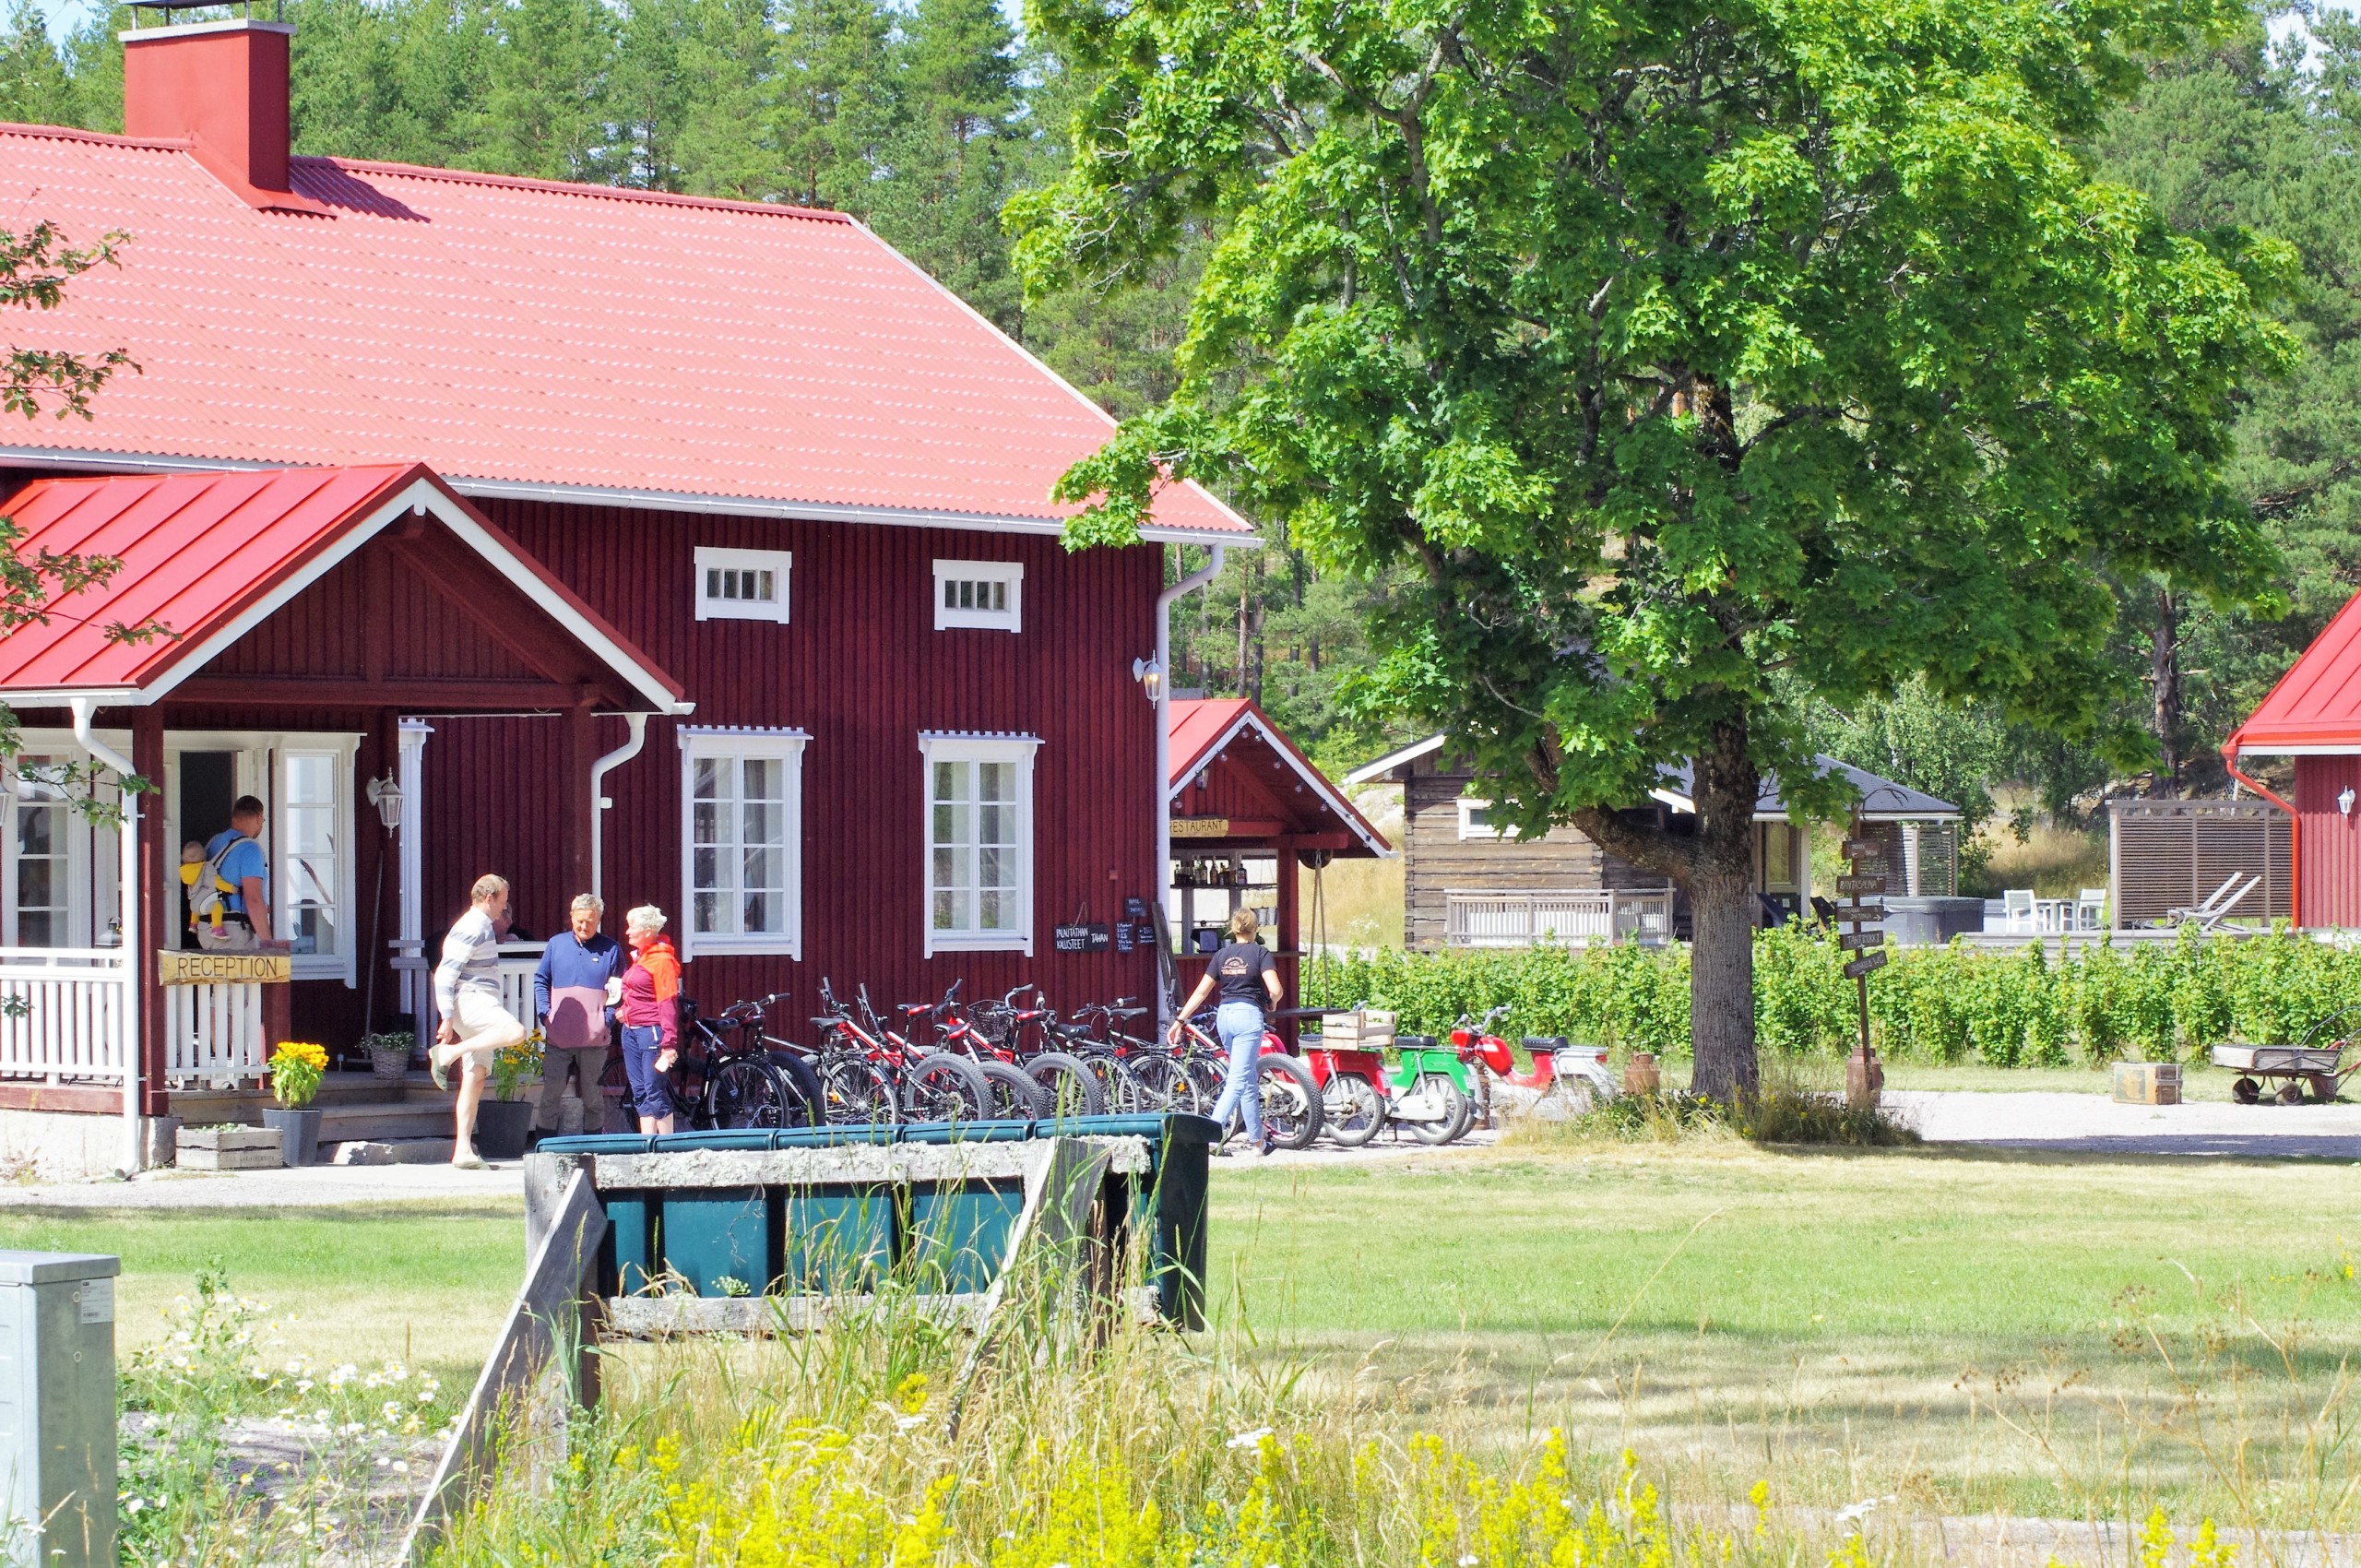 En gammaldags råd trähusbyggnad och gårdsplan med cyklar, människor och